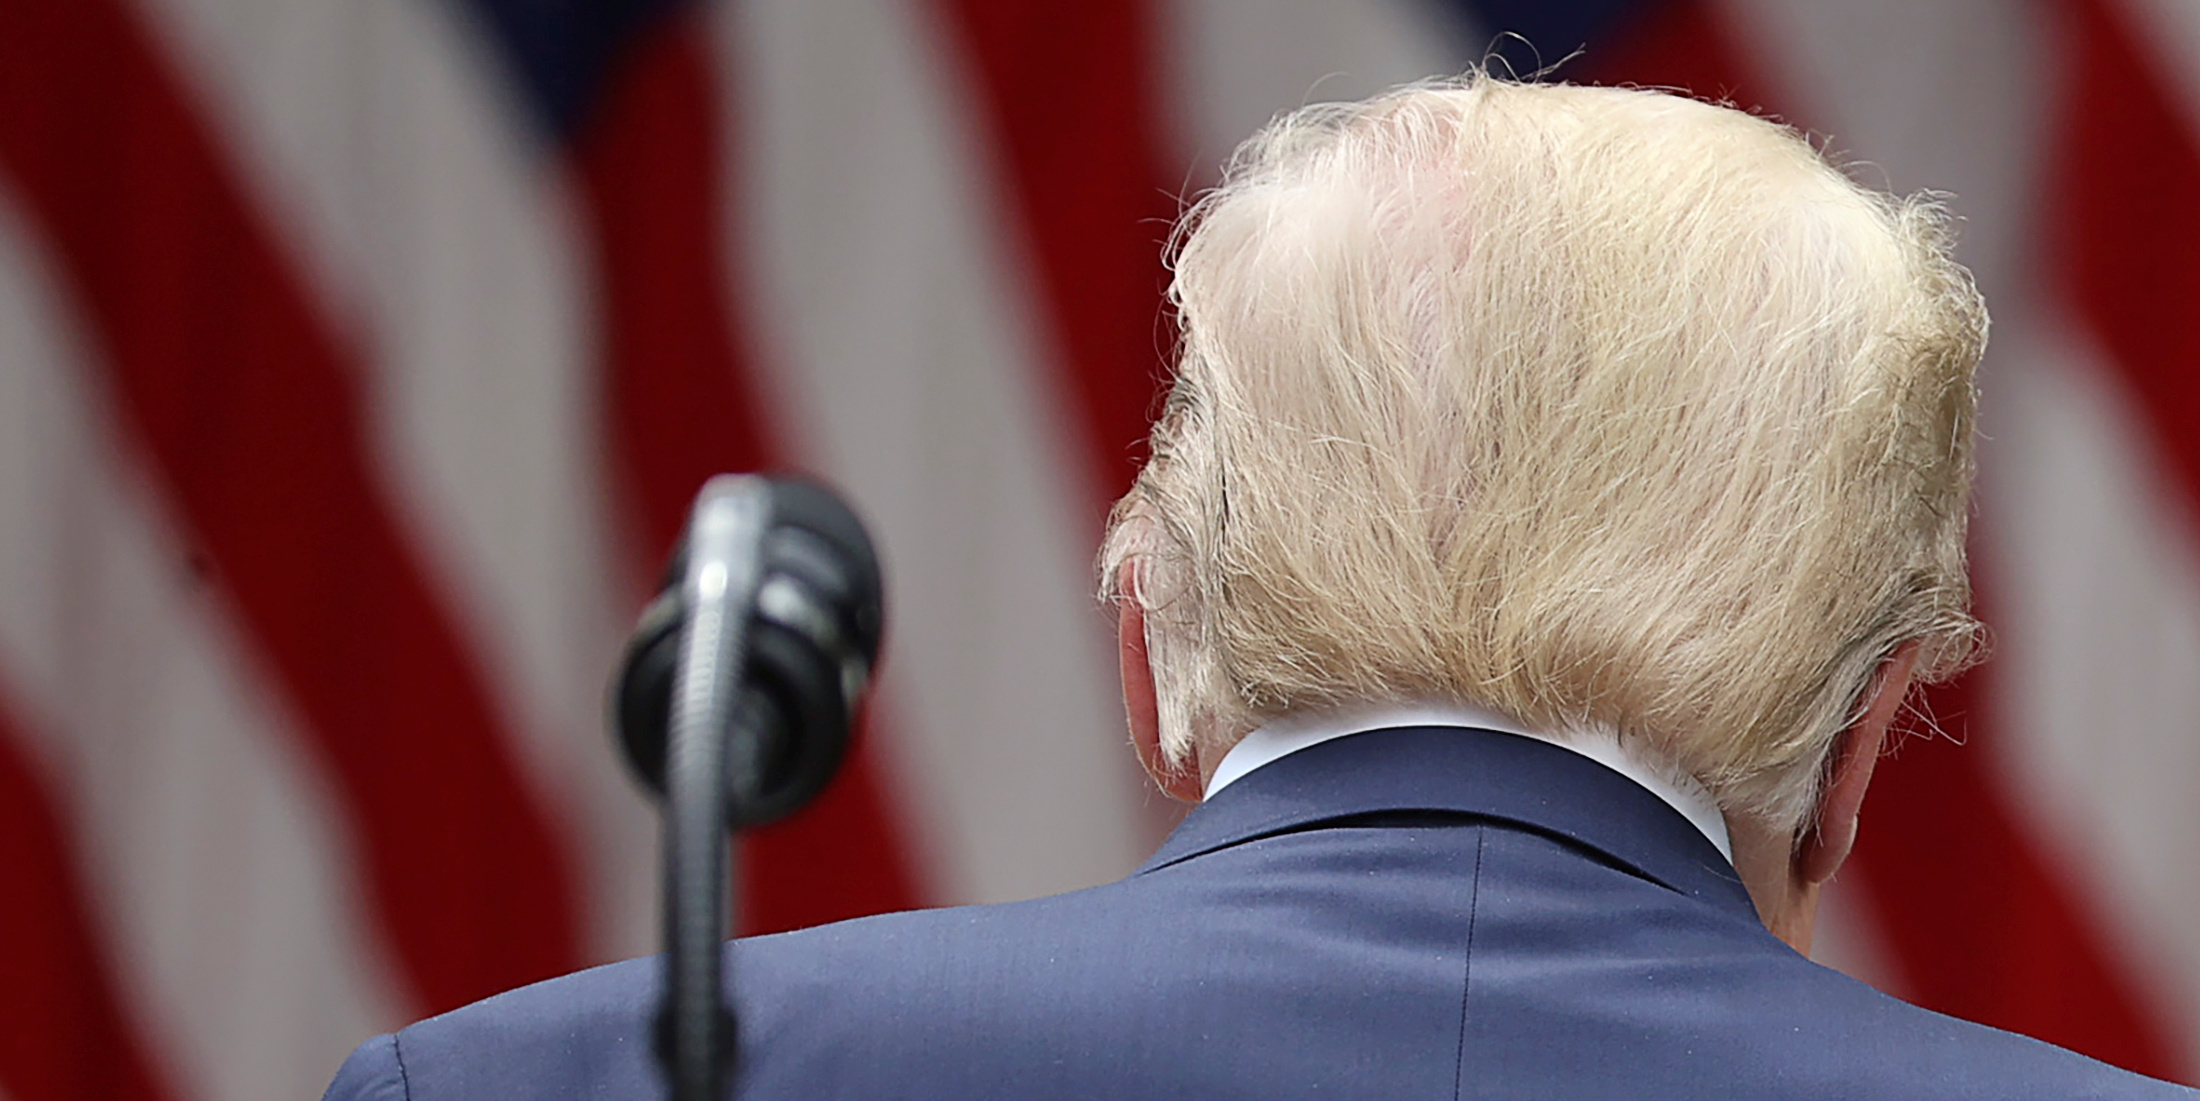 El mercado pasa del segundo impeachment a Trump: Mira hacia adelante, no hacia atrás